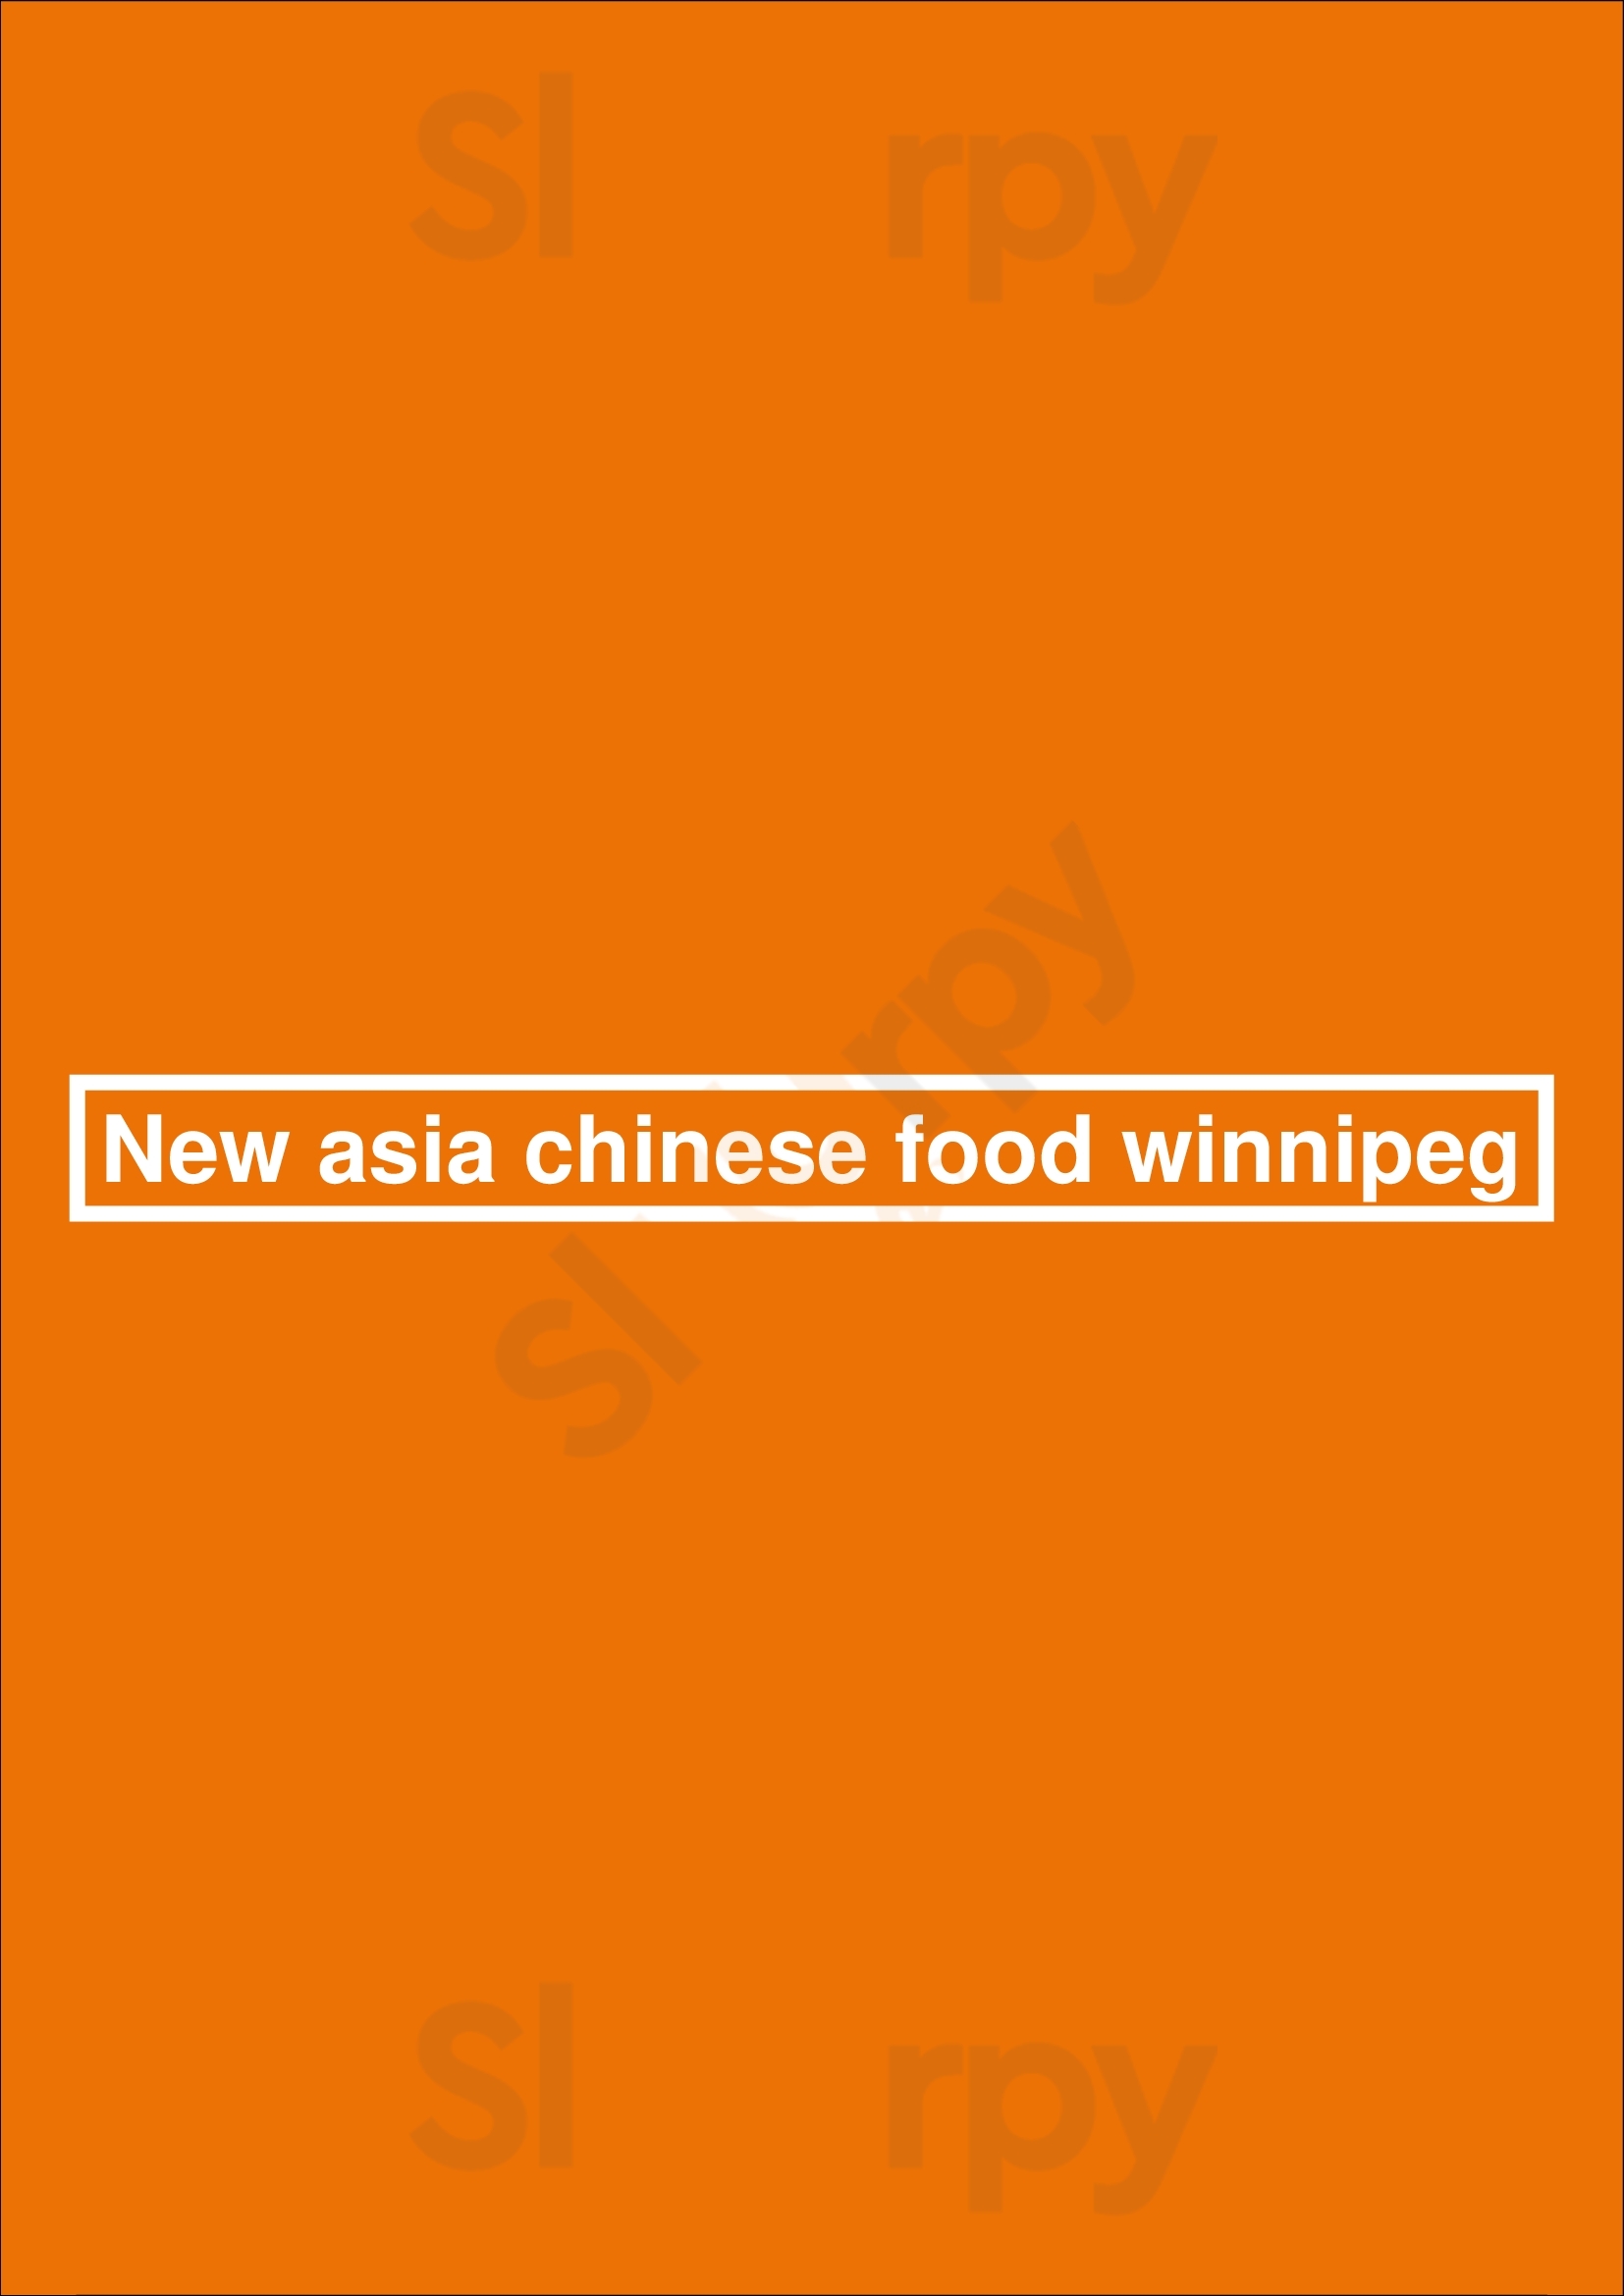 New Asia Chinese Food Winnipeg Menu - 1